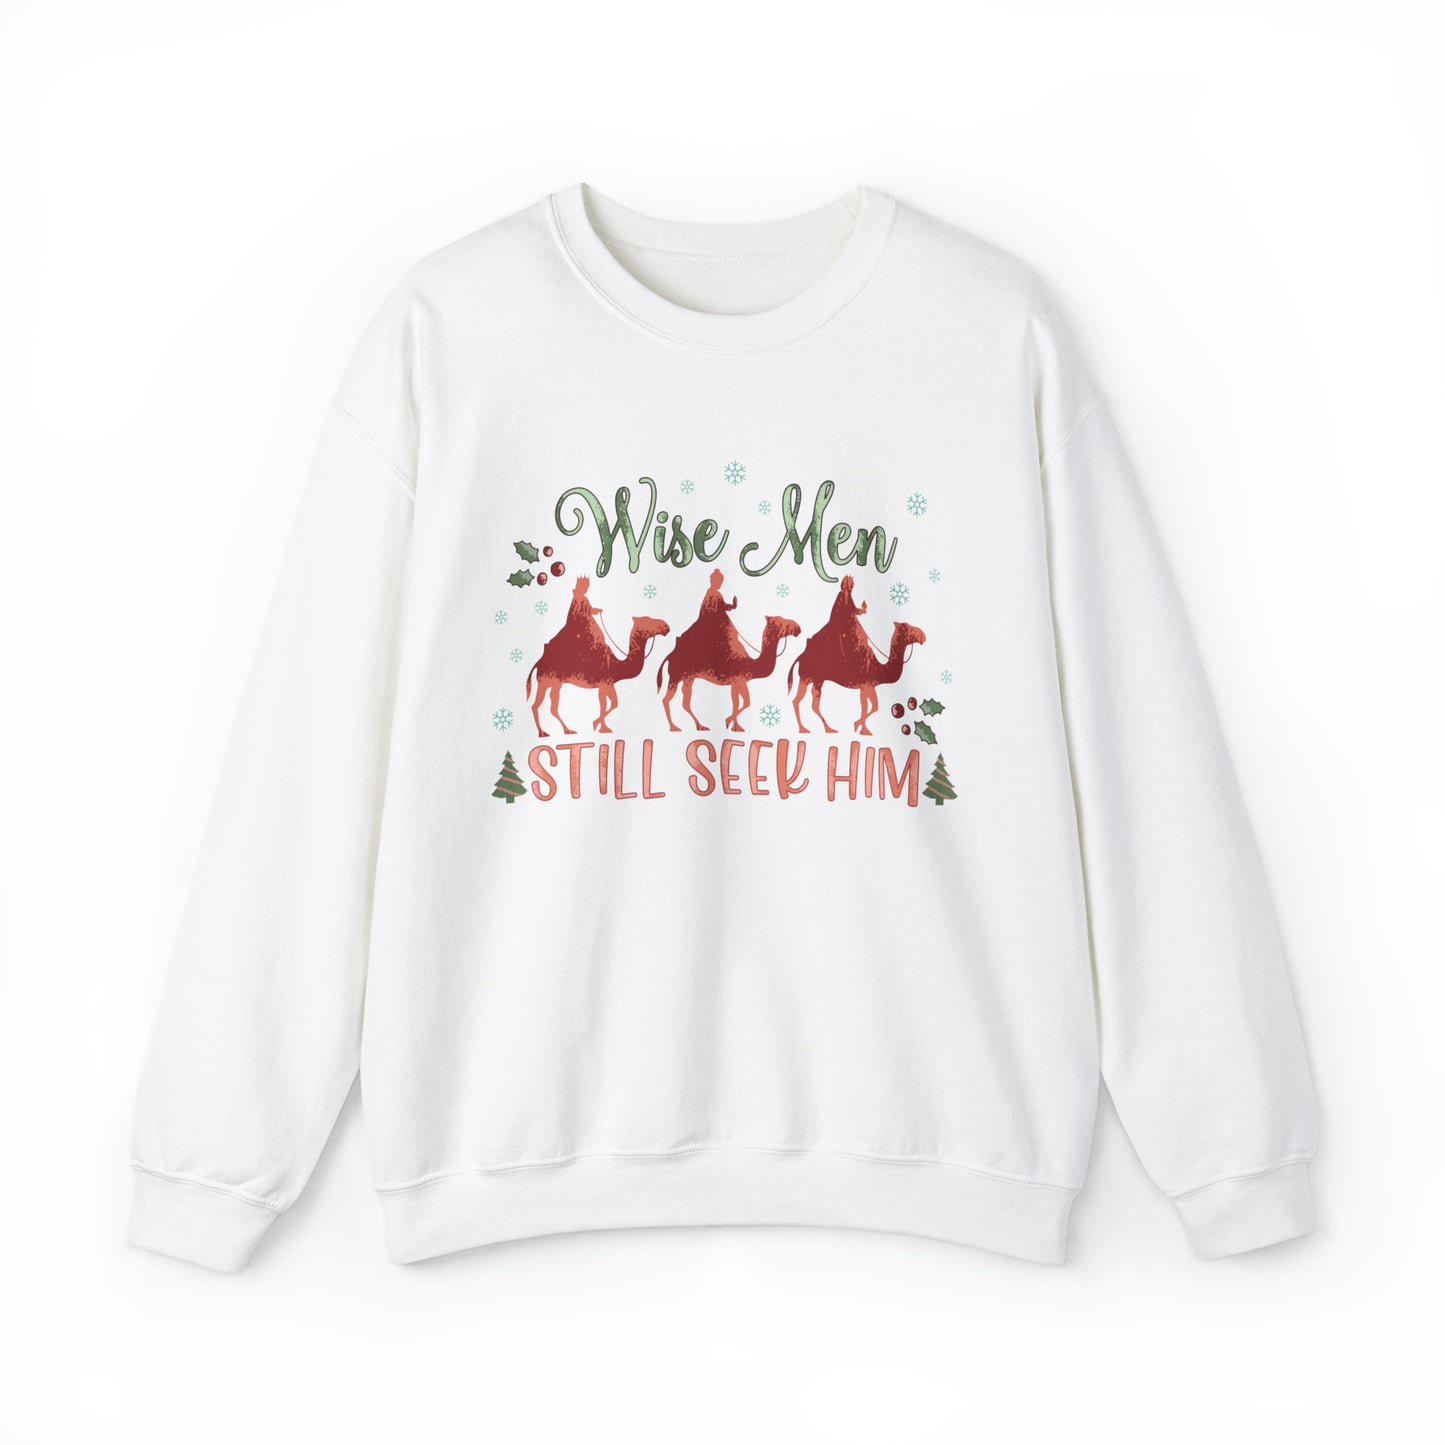 Wise Men Still Seek Him Women's Christmas Sweatshirt